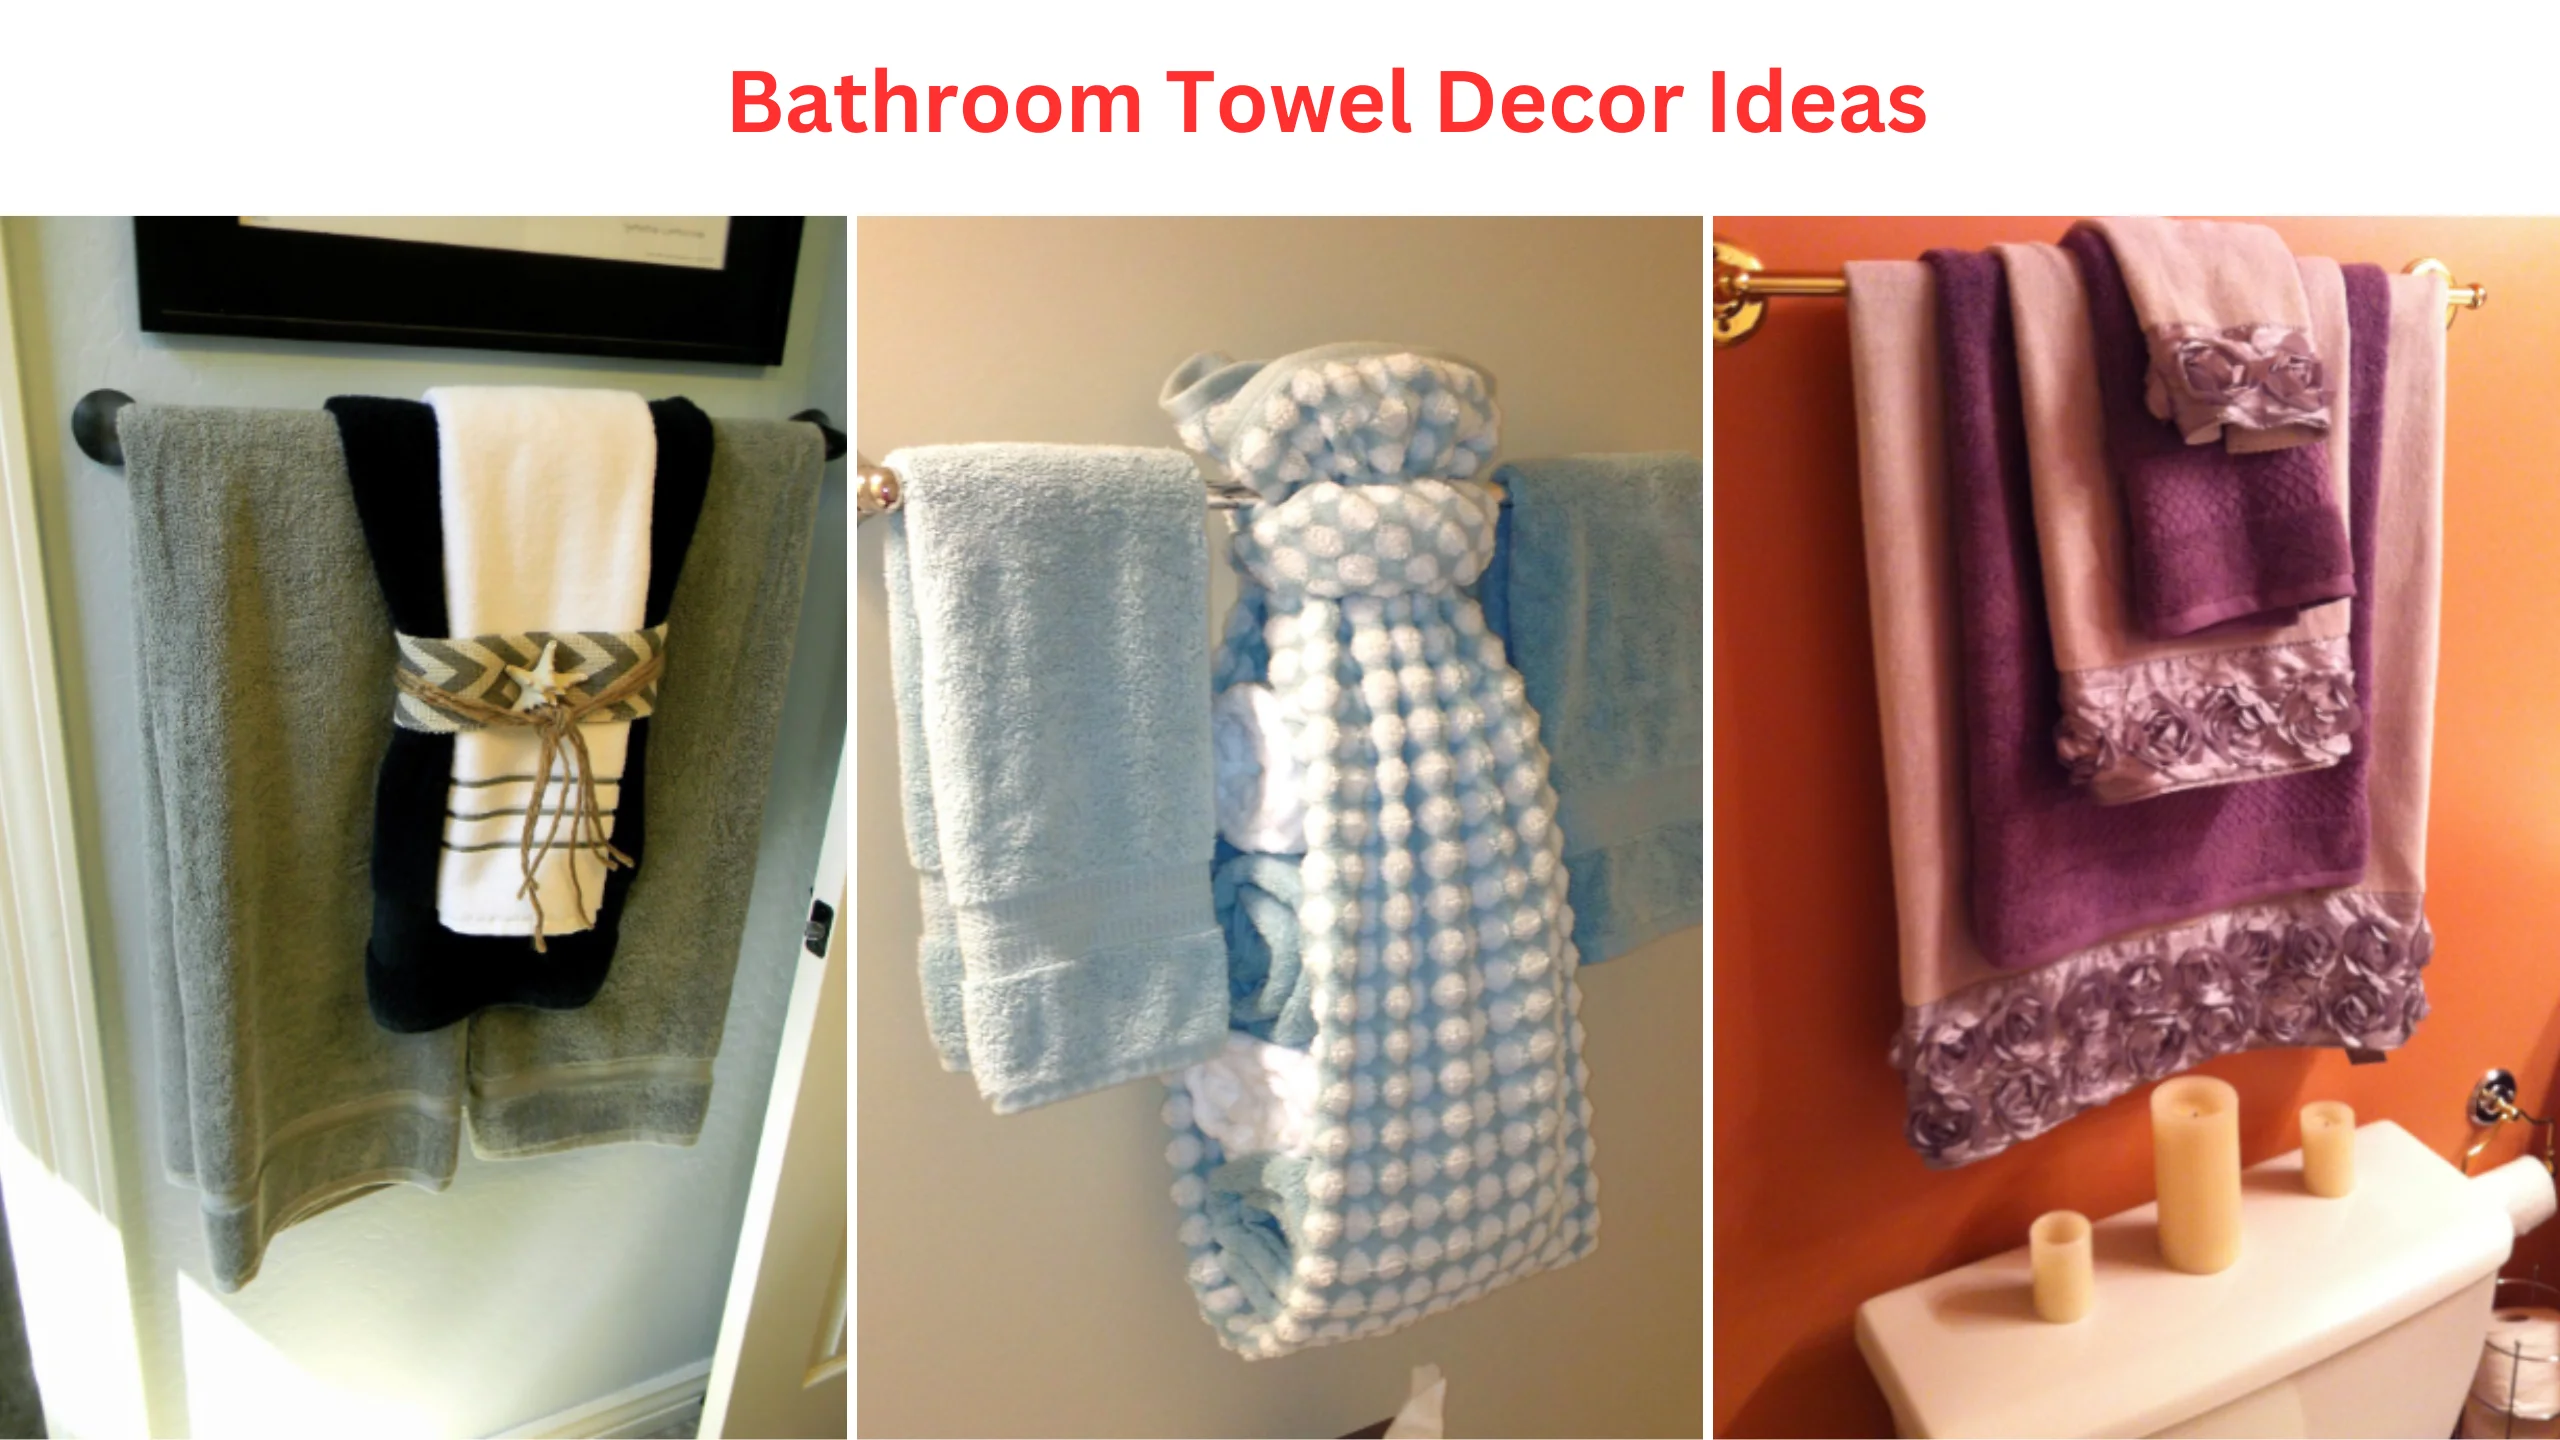 Bathroom towel decor ideas